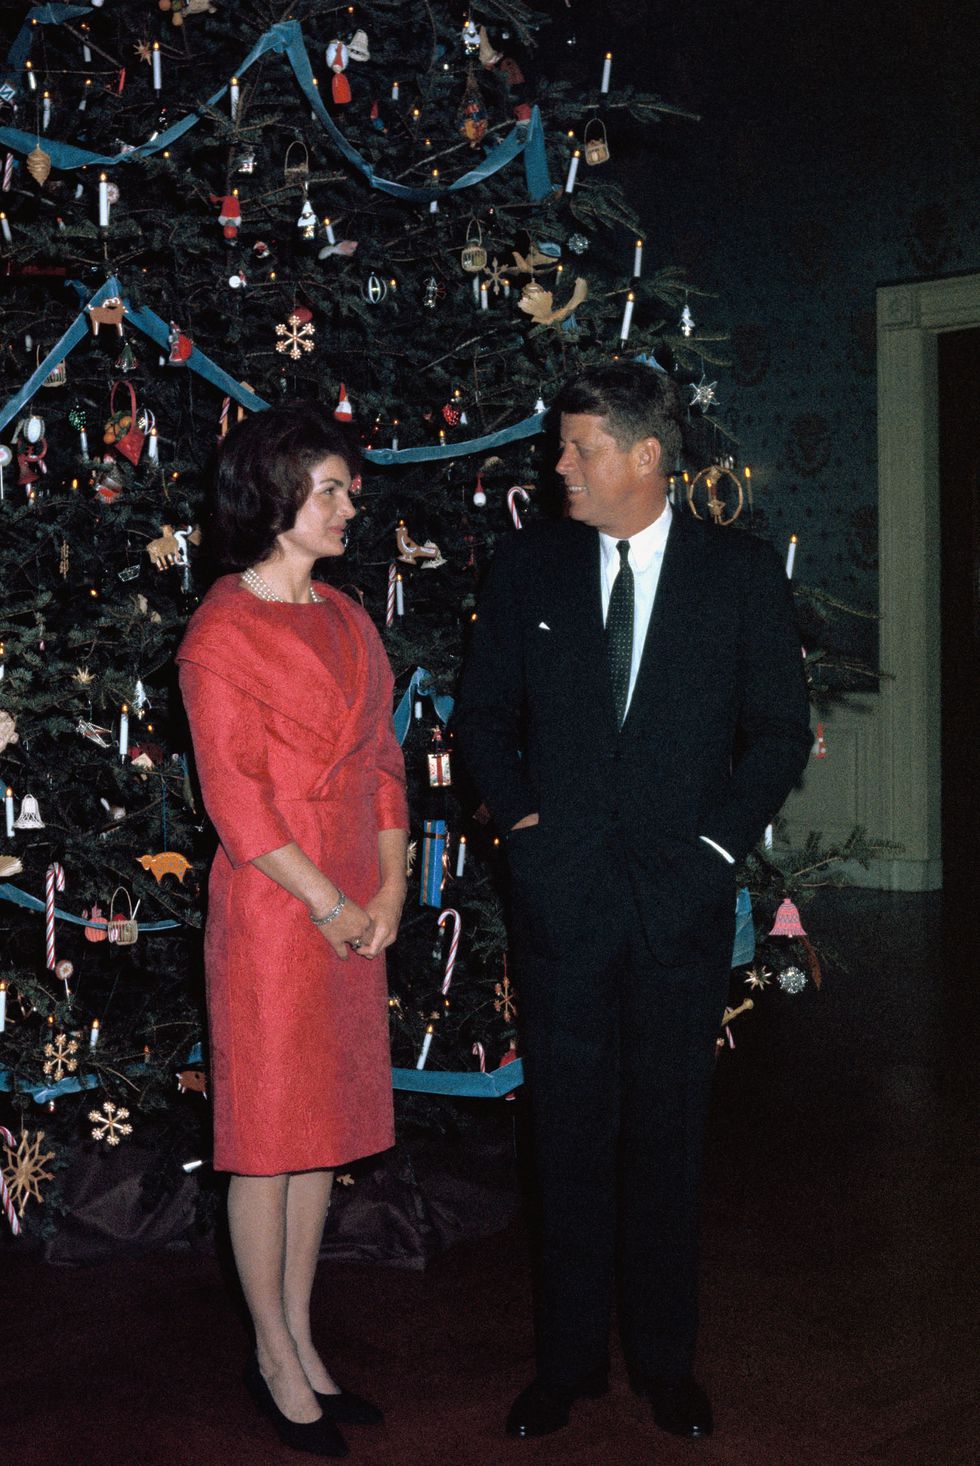 (1961) Truyền thống trang trí theo chủ đề Giáng sinh bắt nguồn từ Jacqueline Kennedy khi bà trang hoàng cây thông với các quả cầu trang trí từ vở ba lê 